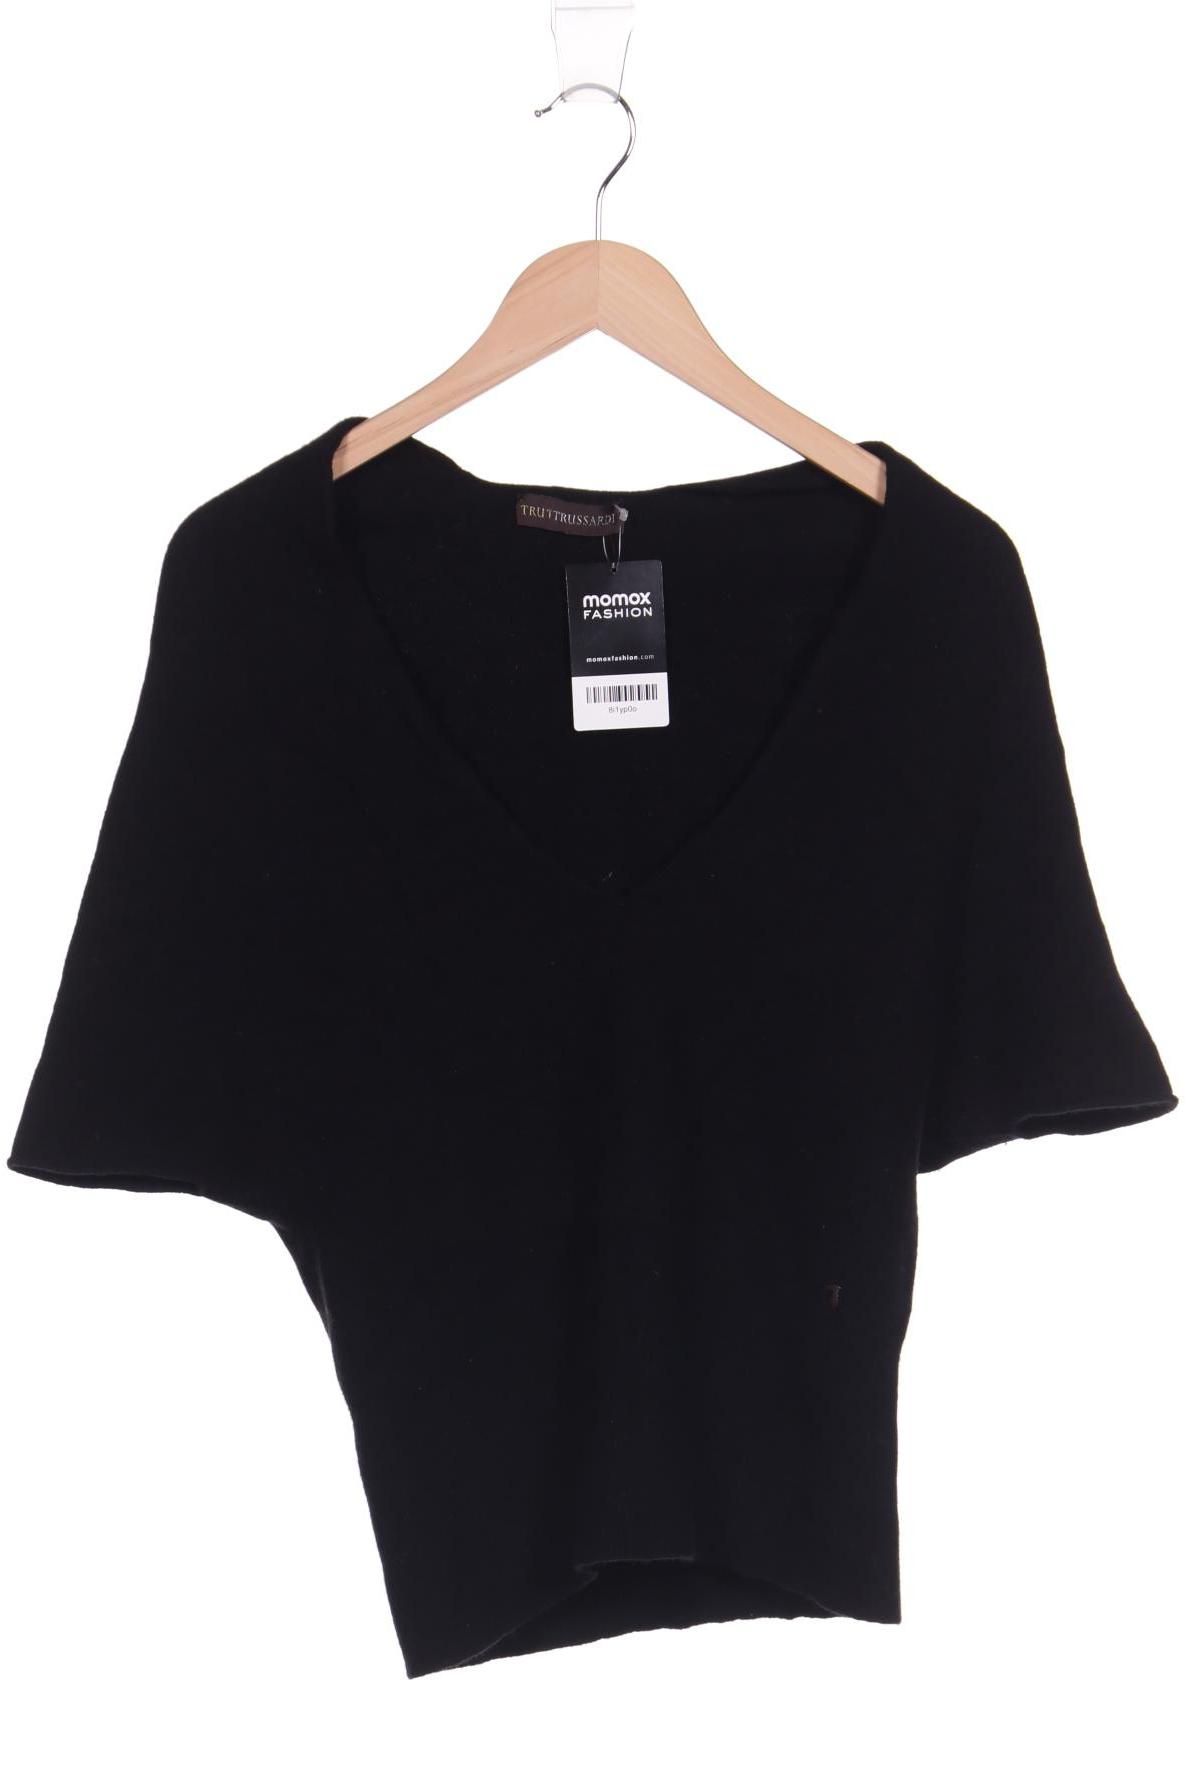 Trussardi Damen Pullover, schwarz, Gr. 36 von Trussardi